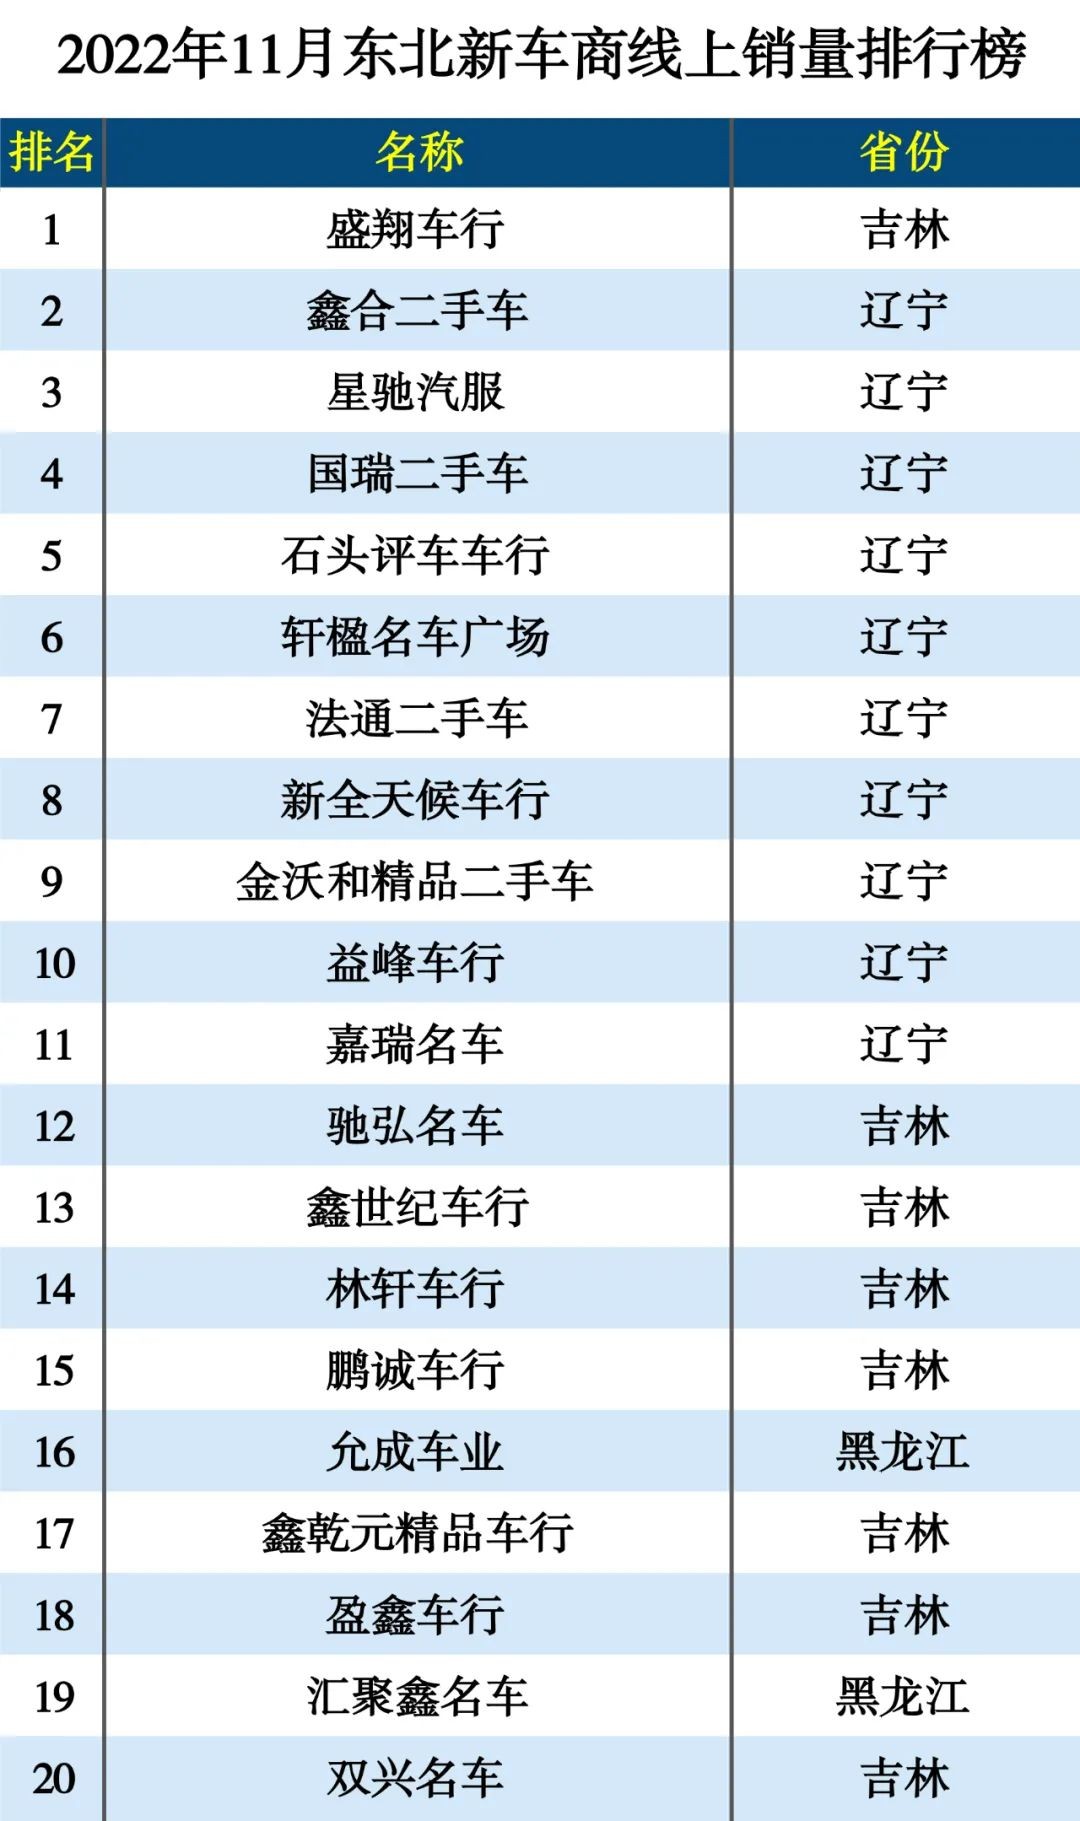 瓜子最新发布：二手车遇下半年最大降幅 苏州线上反超北京居全国第一